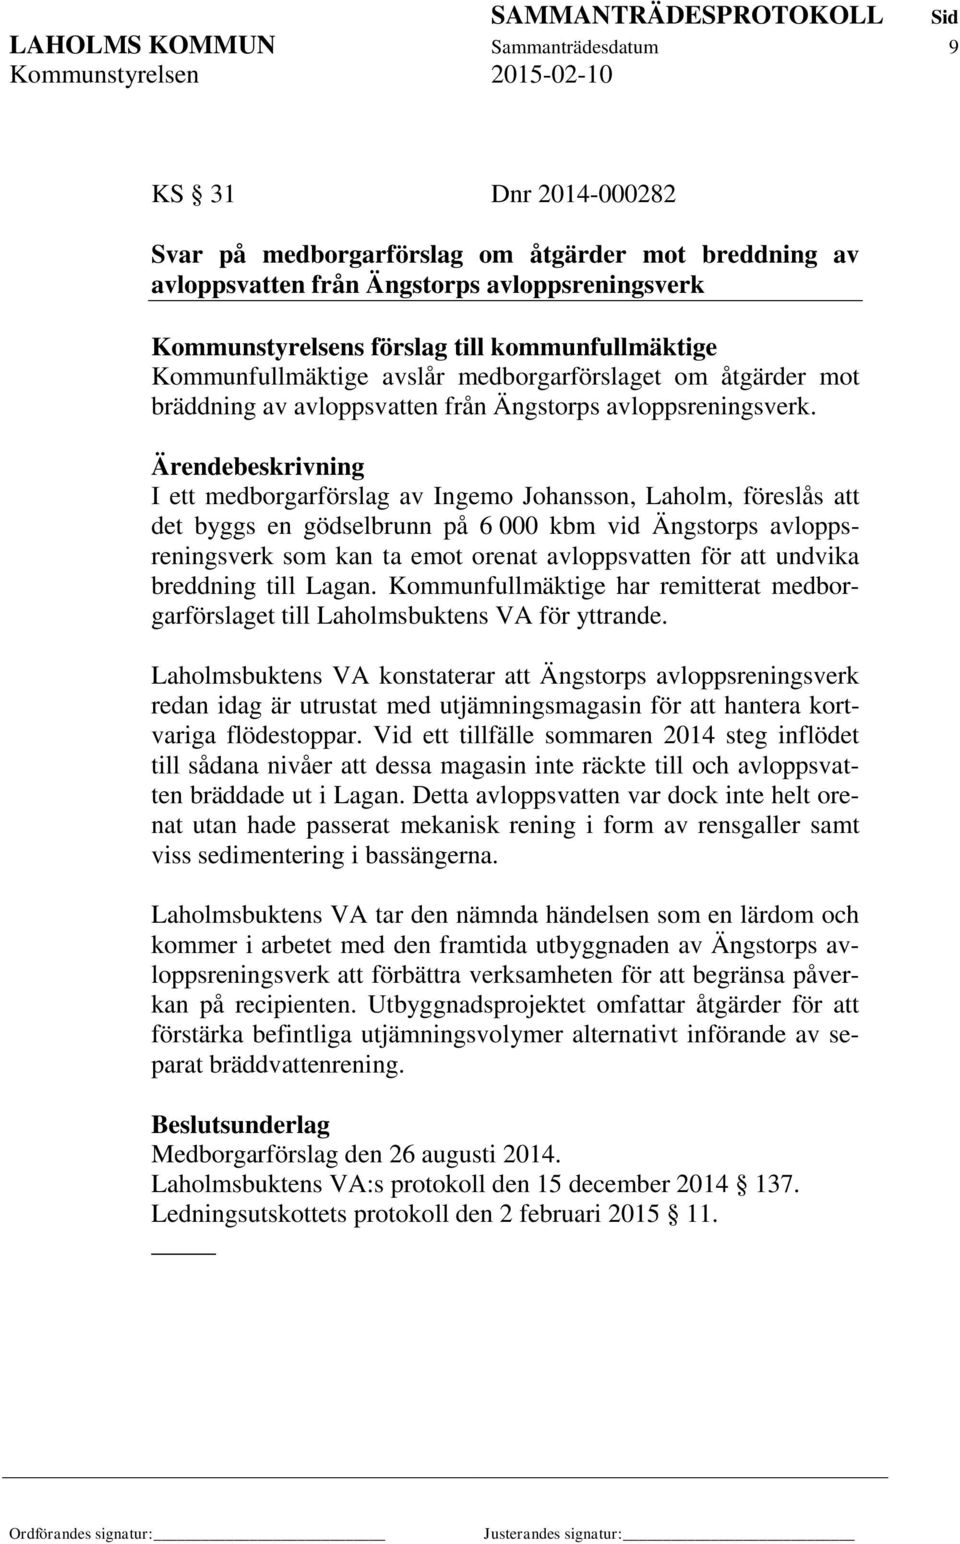 I ett medborgarförslag av Ingemo Johansson, Laholm, föreslås att det byggs en gödselbrunn på 6 000 kbm vid Ängstorps avloppsreningsverk som kan ta emot orenat avloppsvatten för att undvika breddning